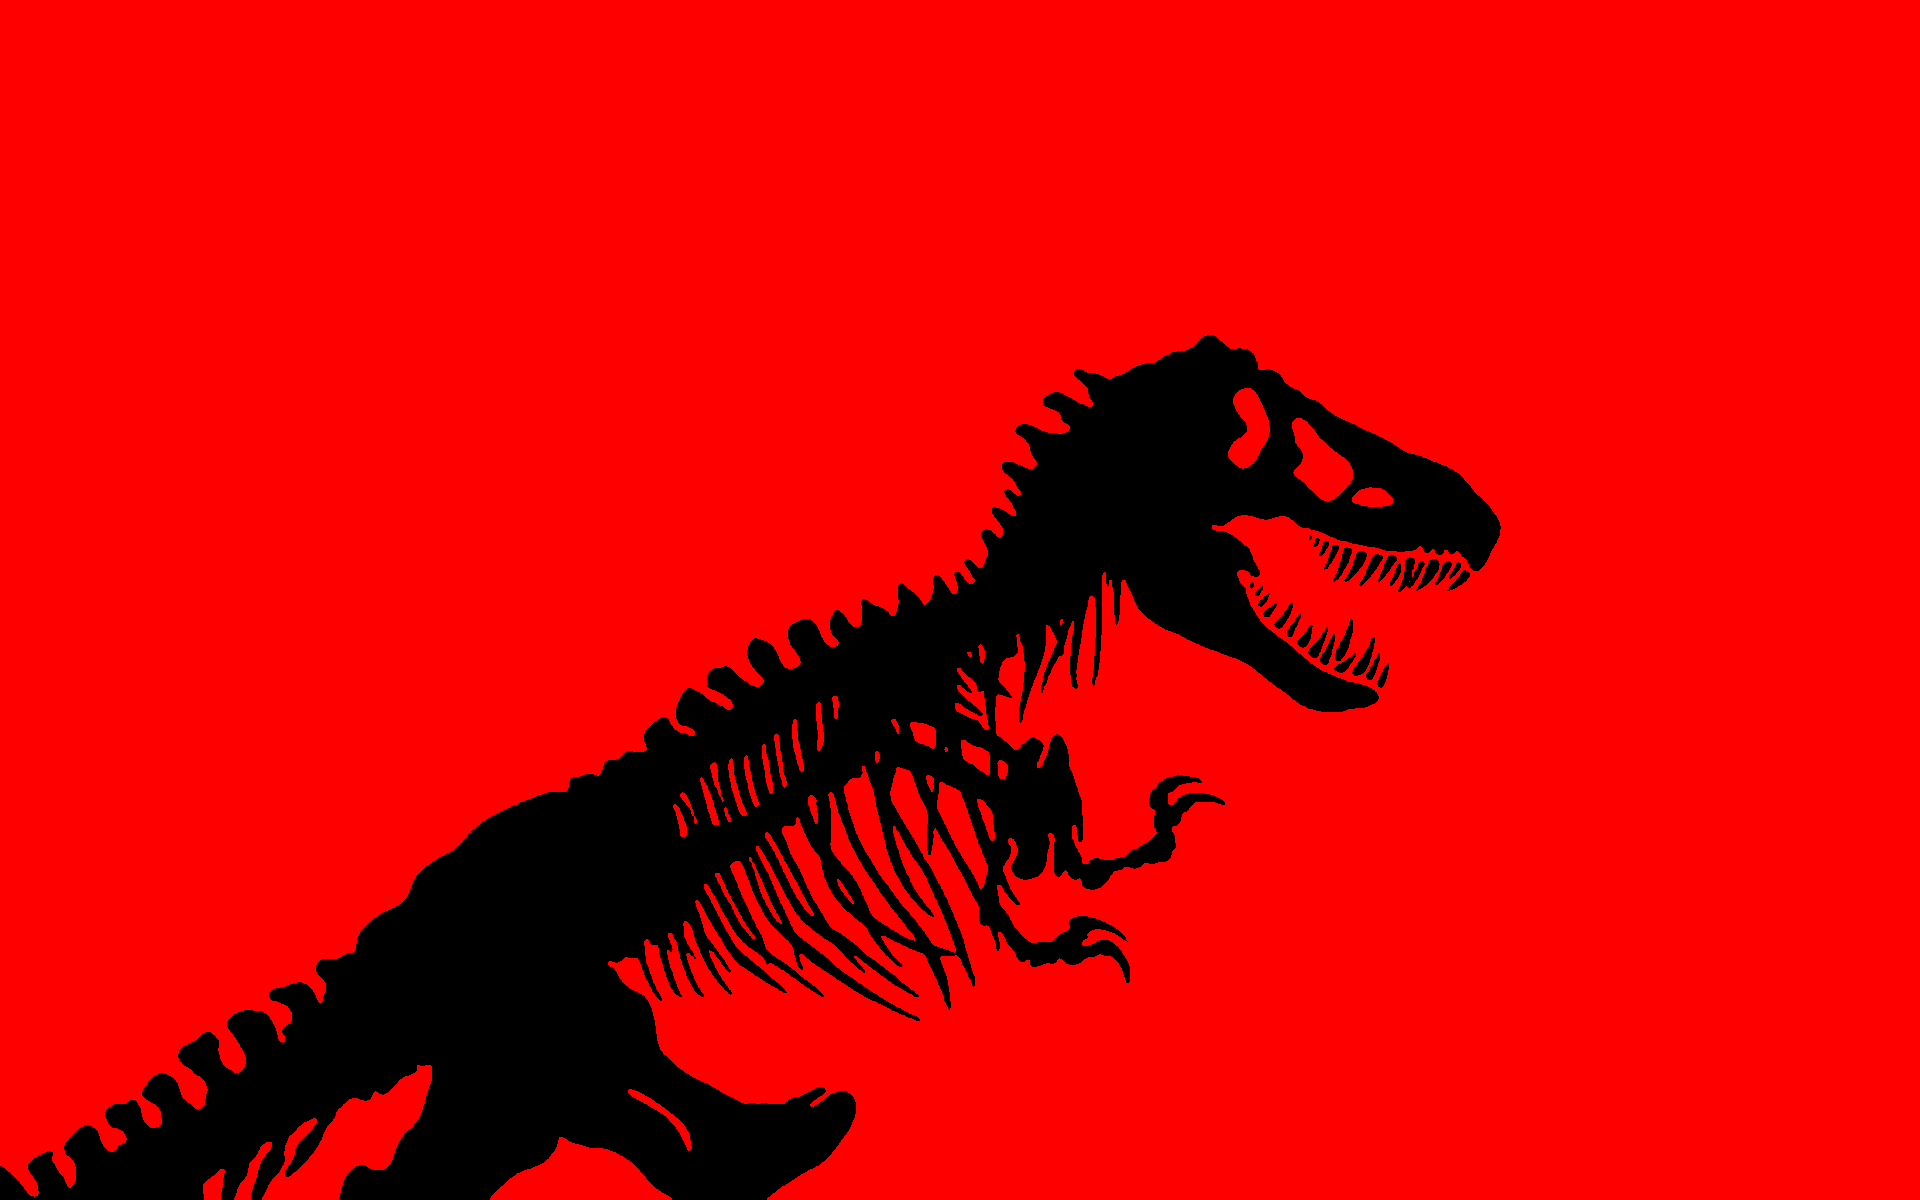 Movie Park Wallpaper. Jurassic park logo, Dinosaur wallpaper, Jurassic park